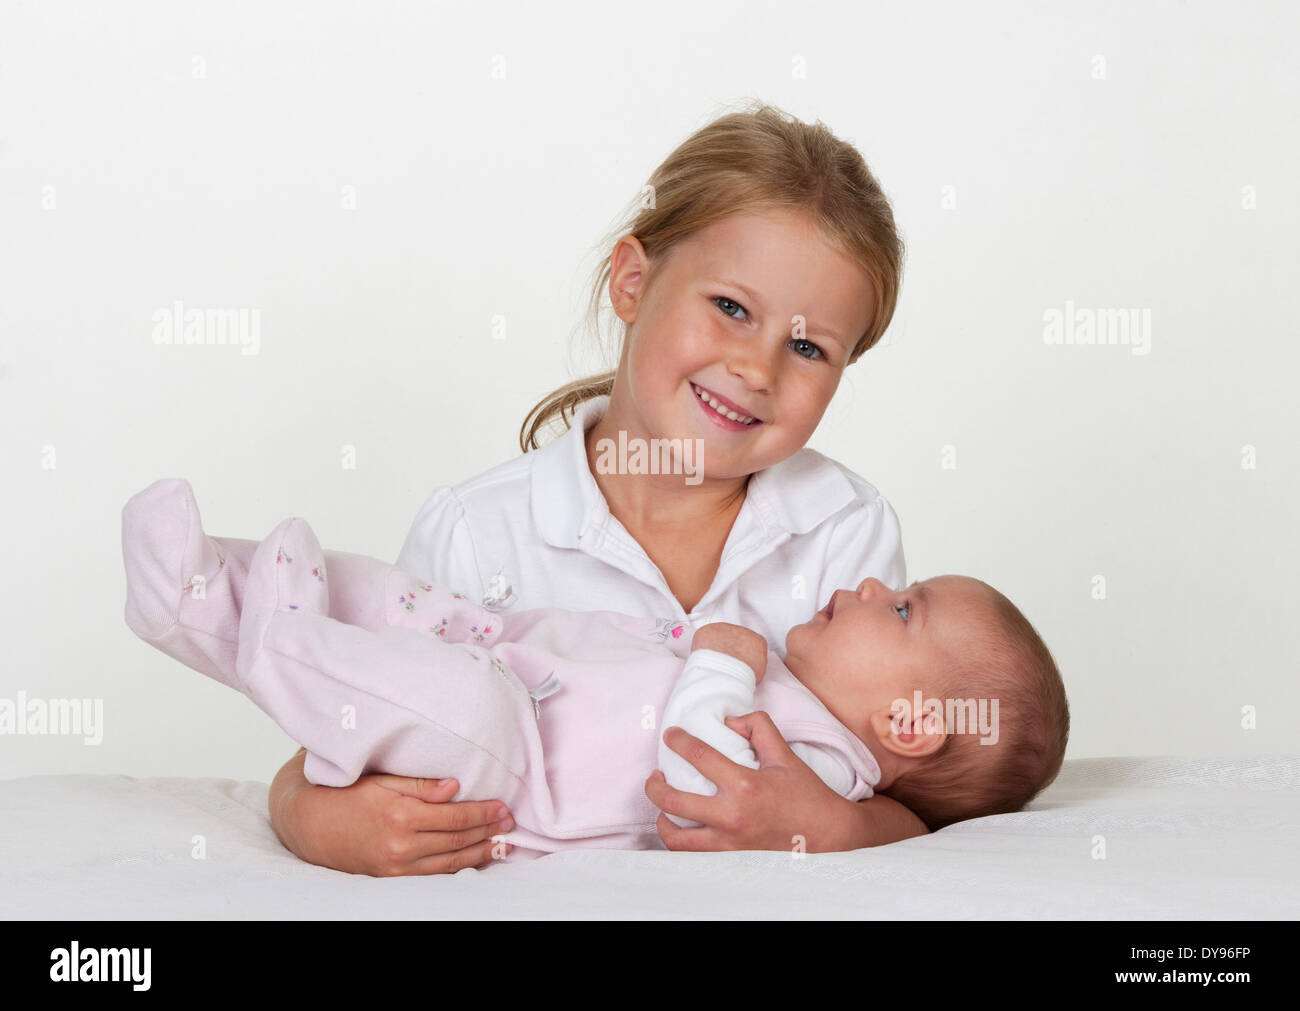 Portrait of smiling little girl holding newborn sister Stock Photo